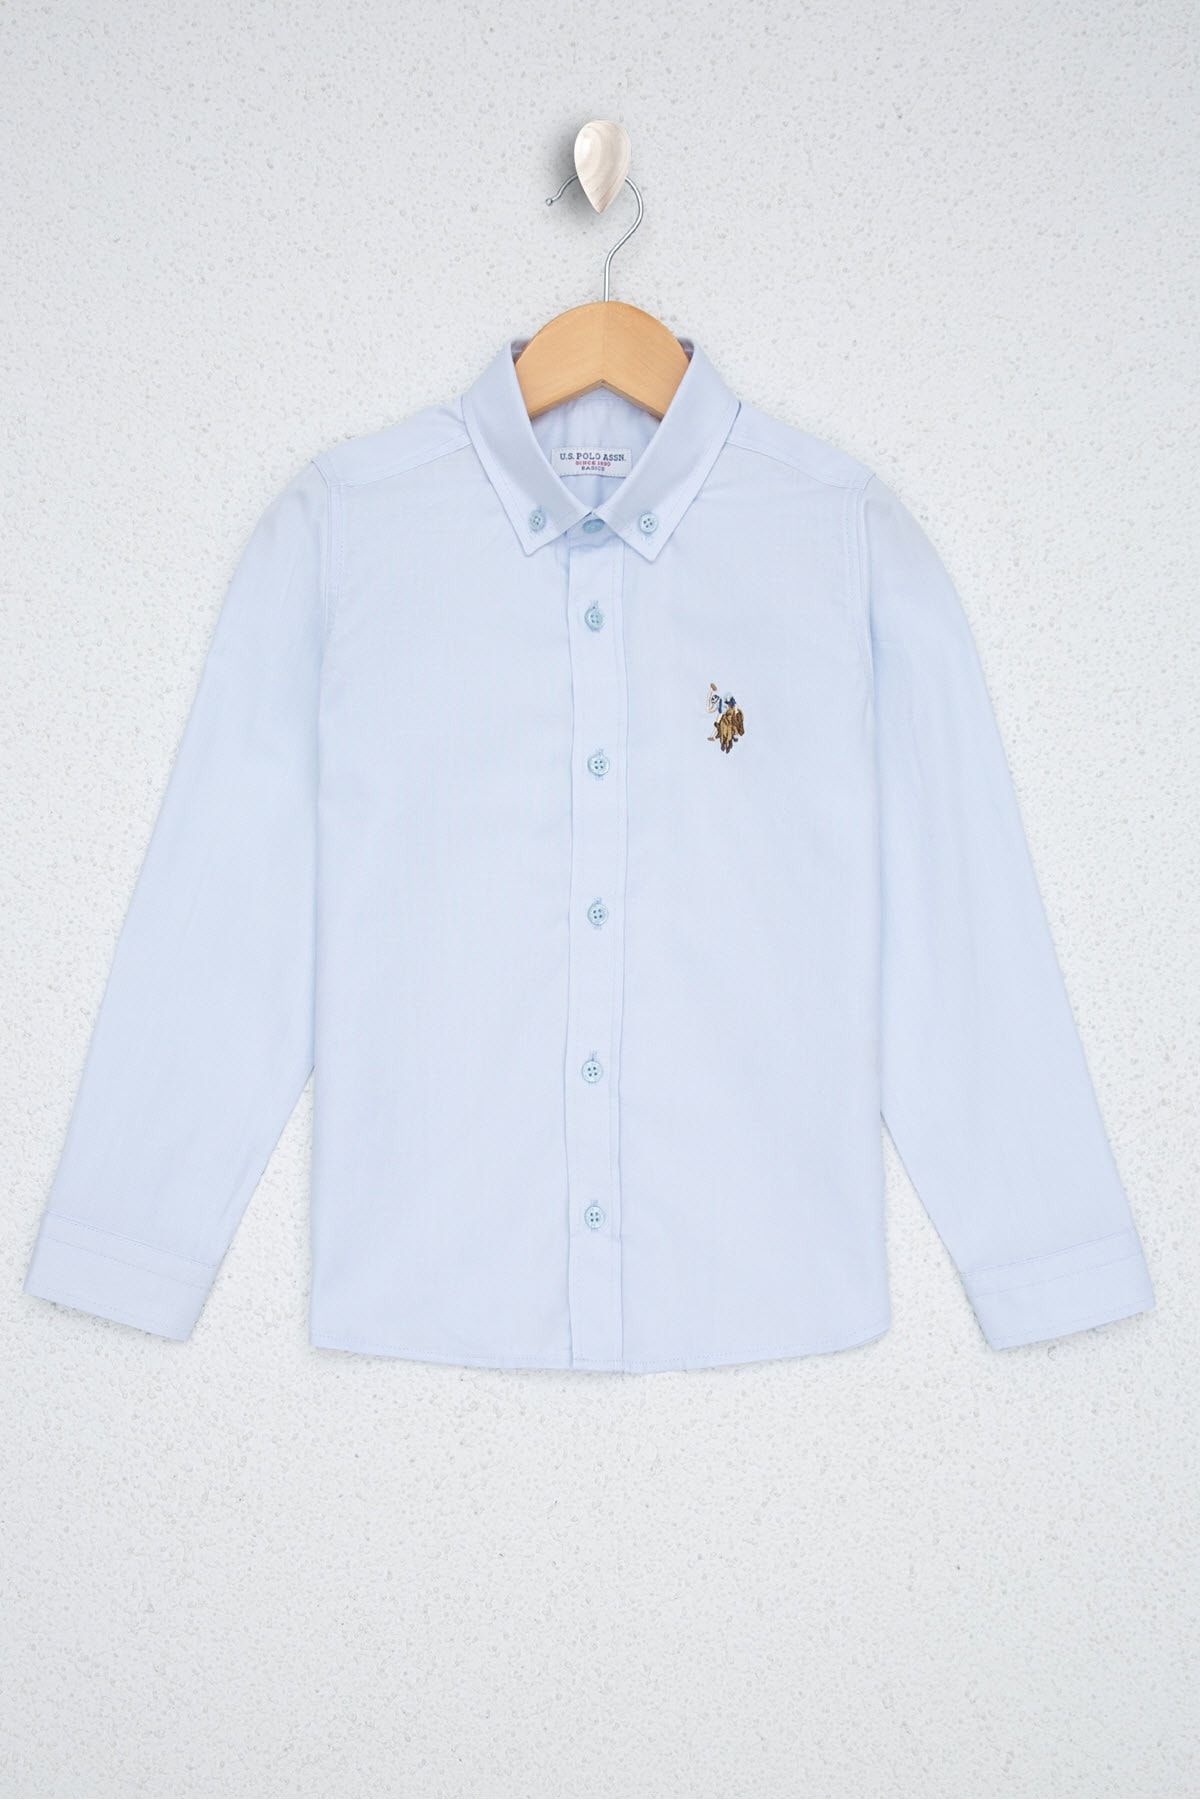 U.S. Polo Assn. Mavı Erkek Çocuk Gömlek